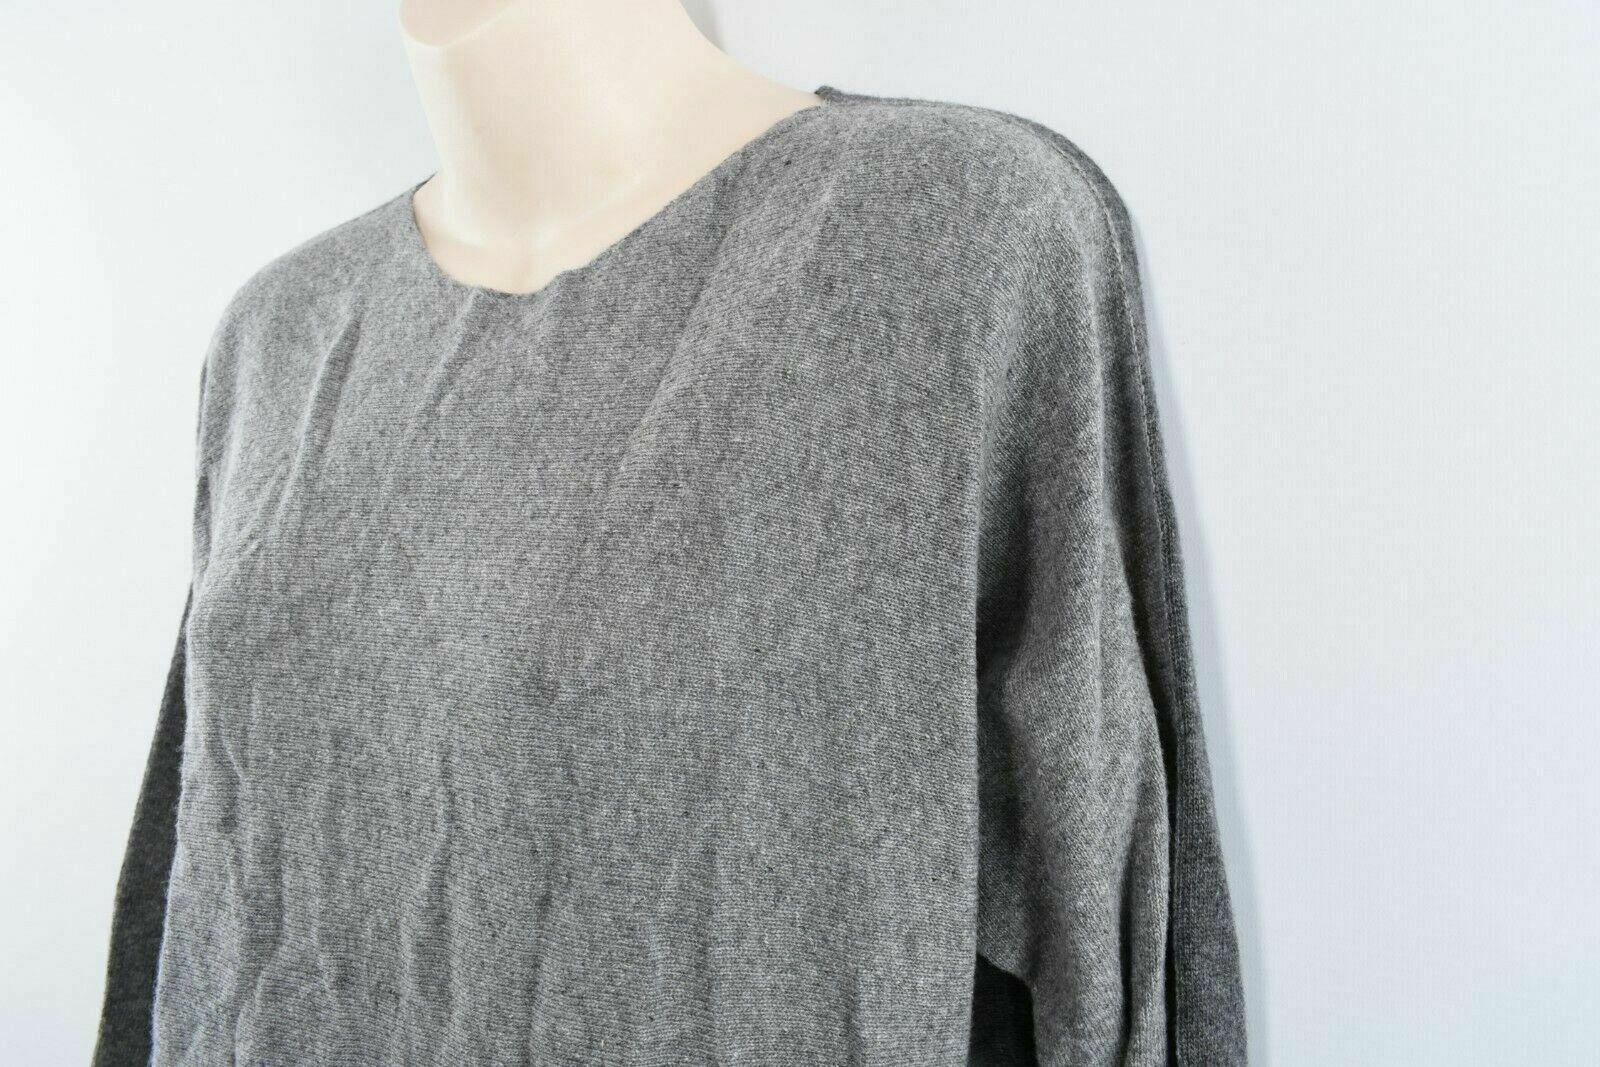 COLLEZIONE GAIA Women's Wool Blend Jumper, Light Grey/Dark Grey size S to size M